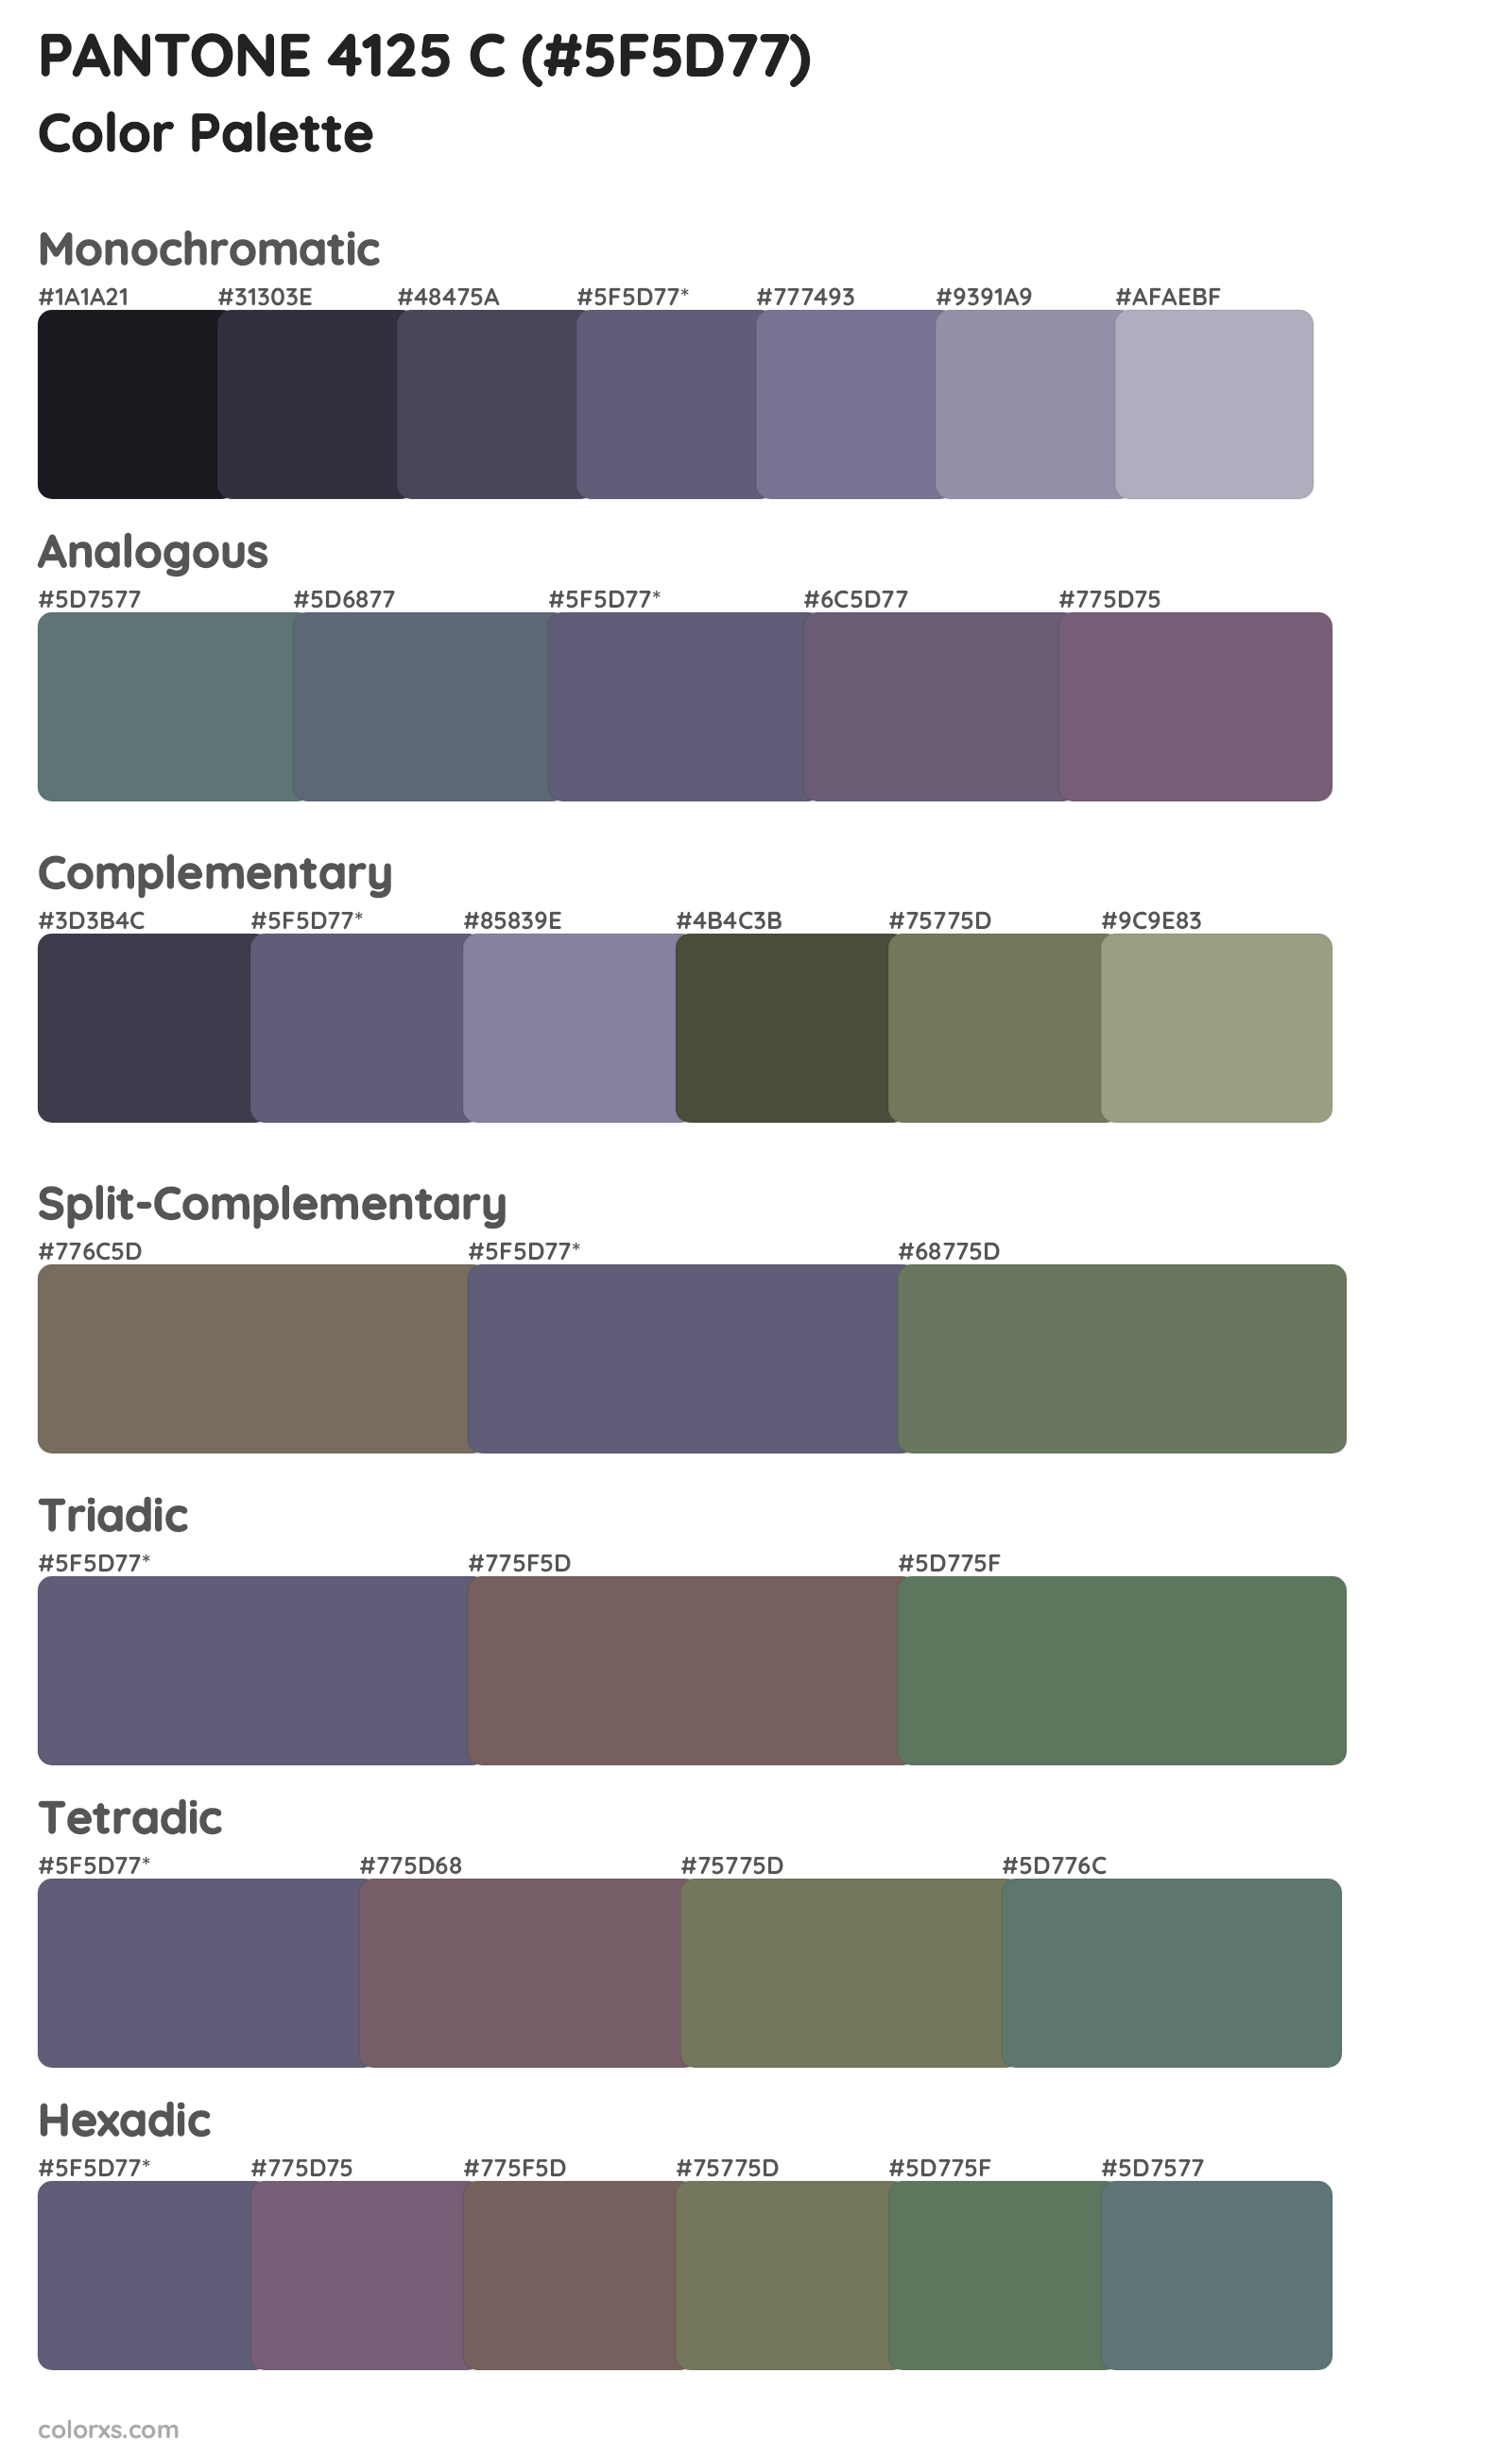 PANTONE 4125 C Color Scheme Palettes